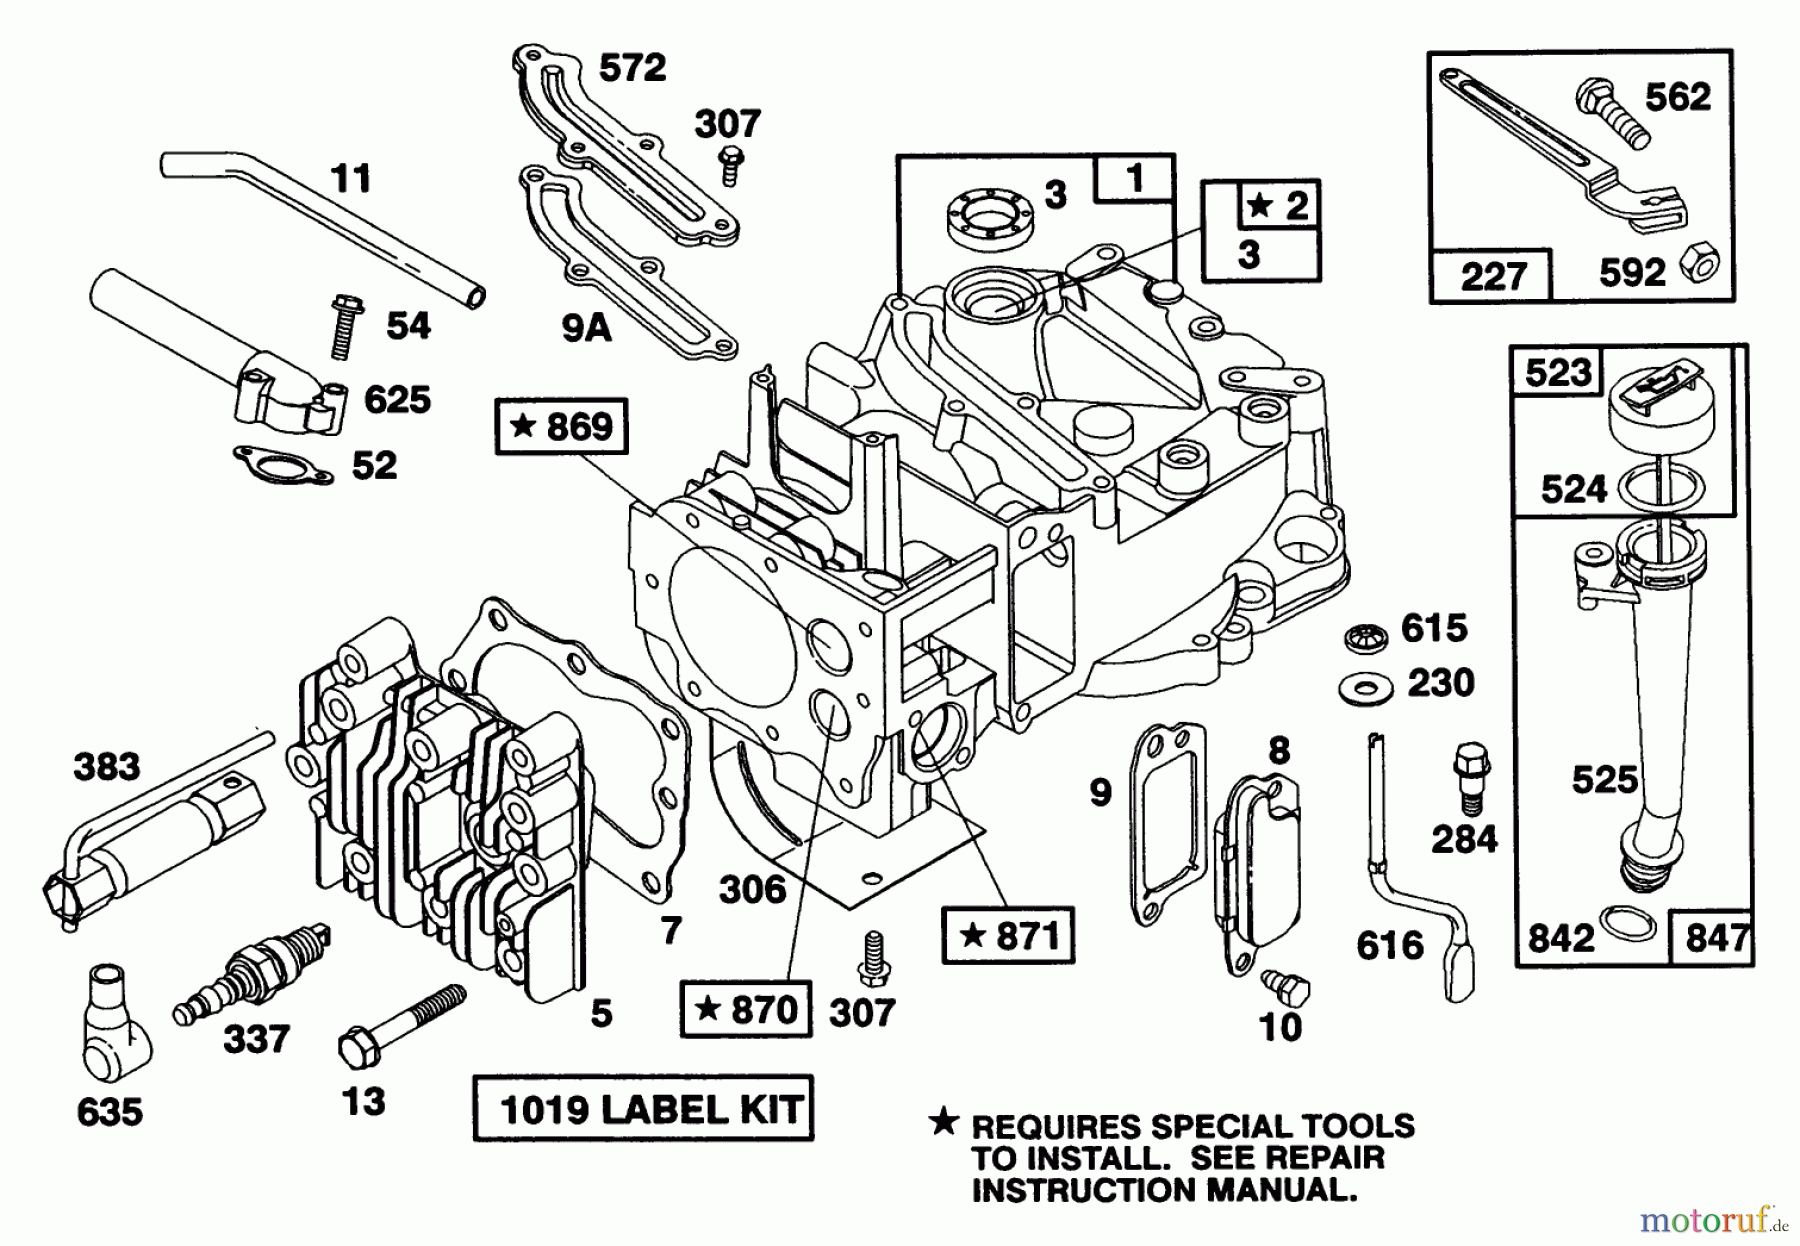  Toro Neu Mowers, Walk-Behind Seite 1 20217 - Toro Lawnmower, 1992 (2000001-2999999) ENGINE BRIGGS & STRATTON MODEL 124702-3115-01 #1